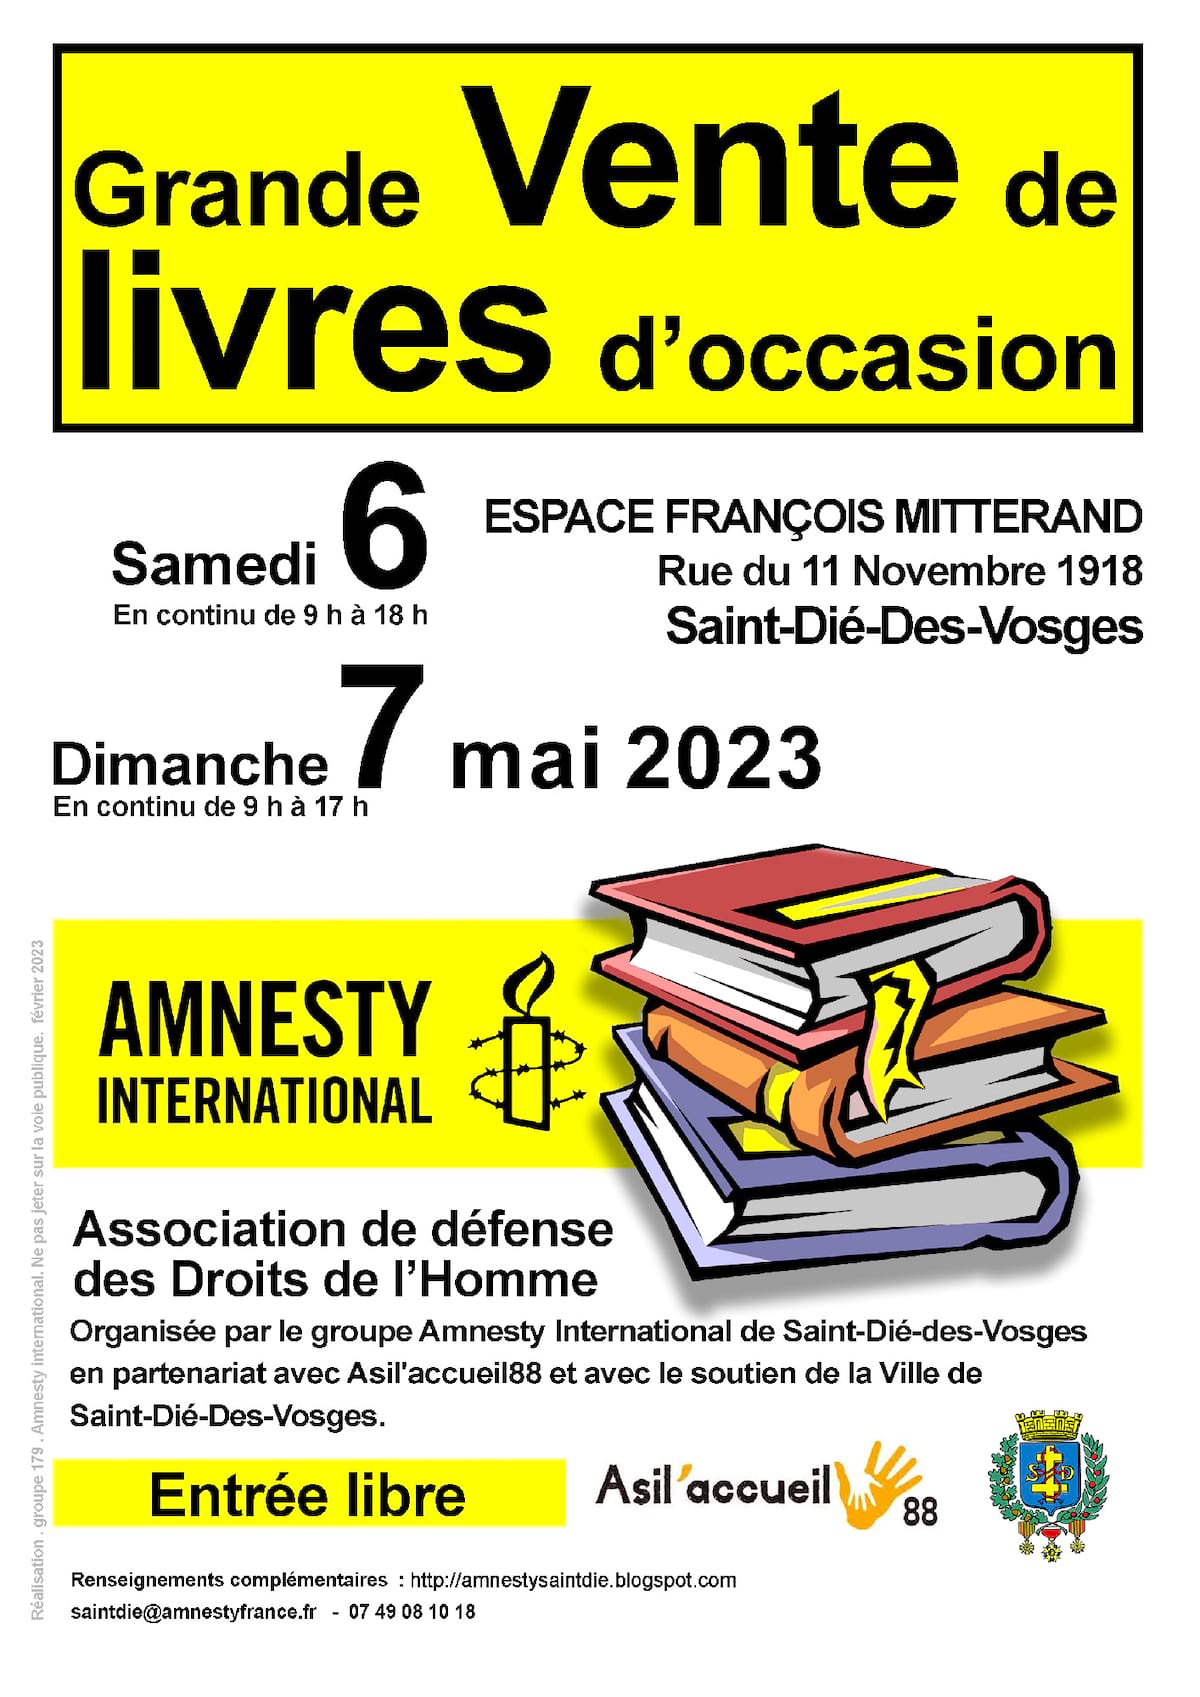 Vente de livres Saint Dié en partenariat avec Amnesty International